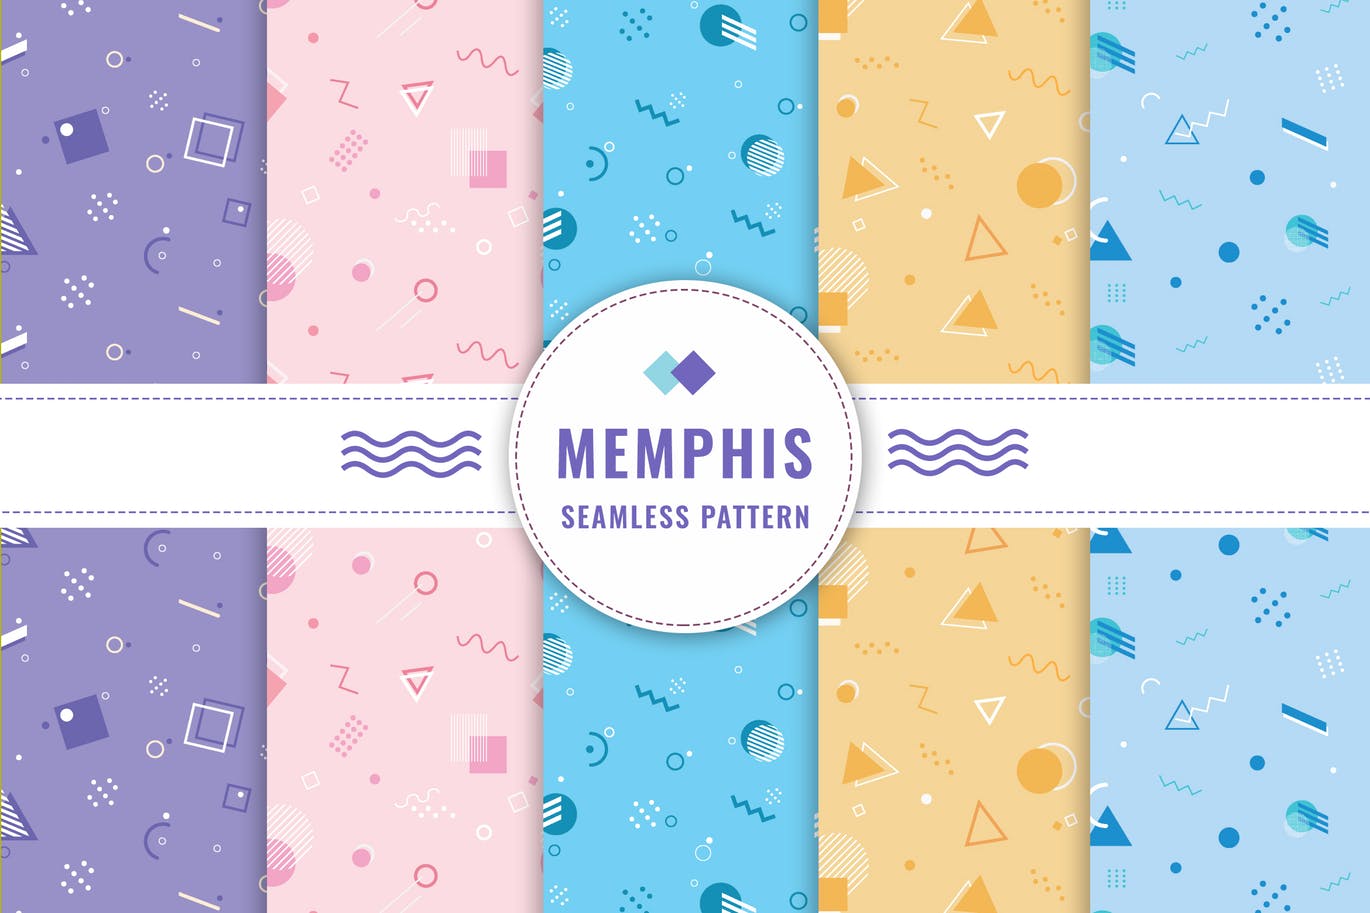 孟菲斯风格连续四方图案无缝背景素材 Memphis Seamless Pattern Collection插图